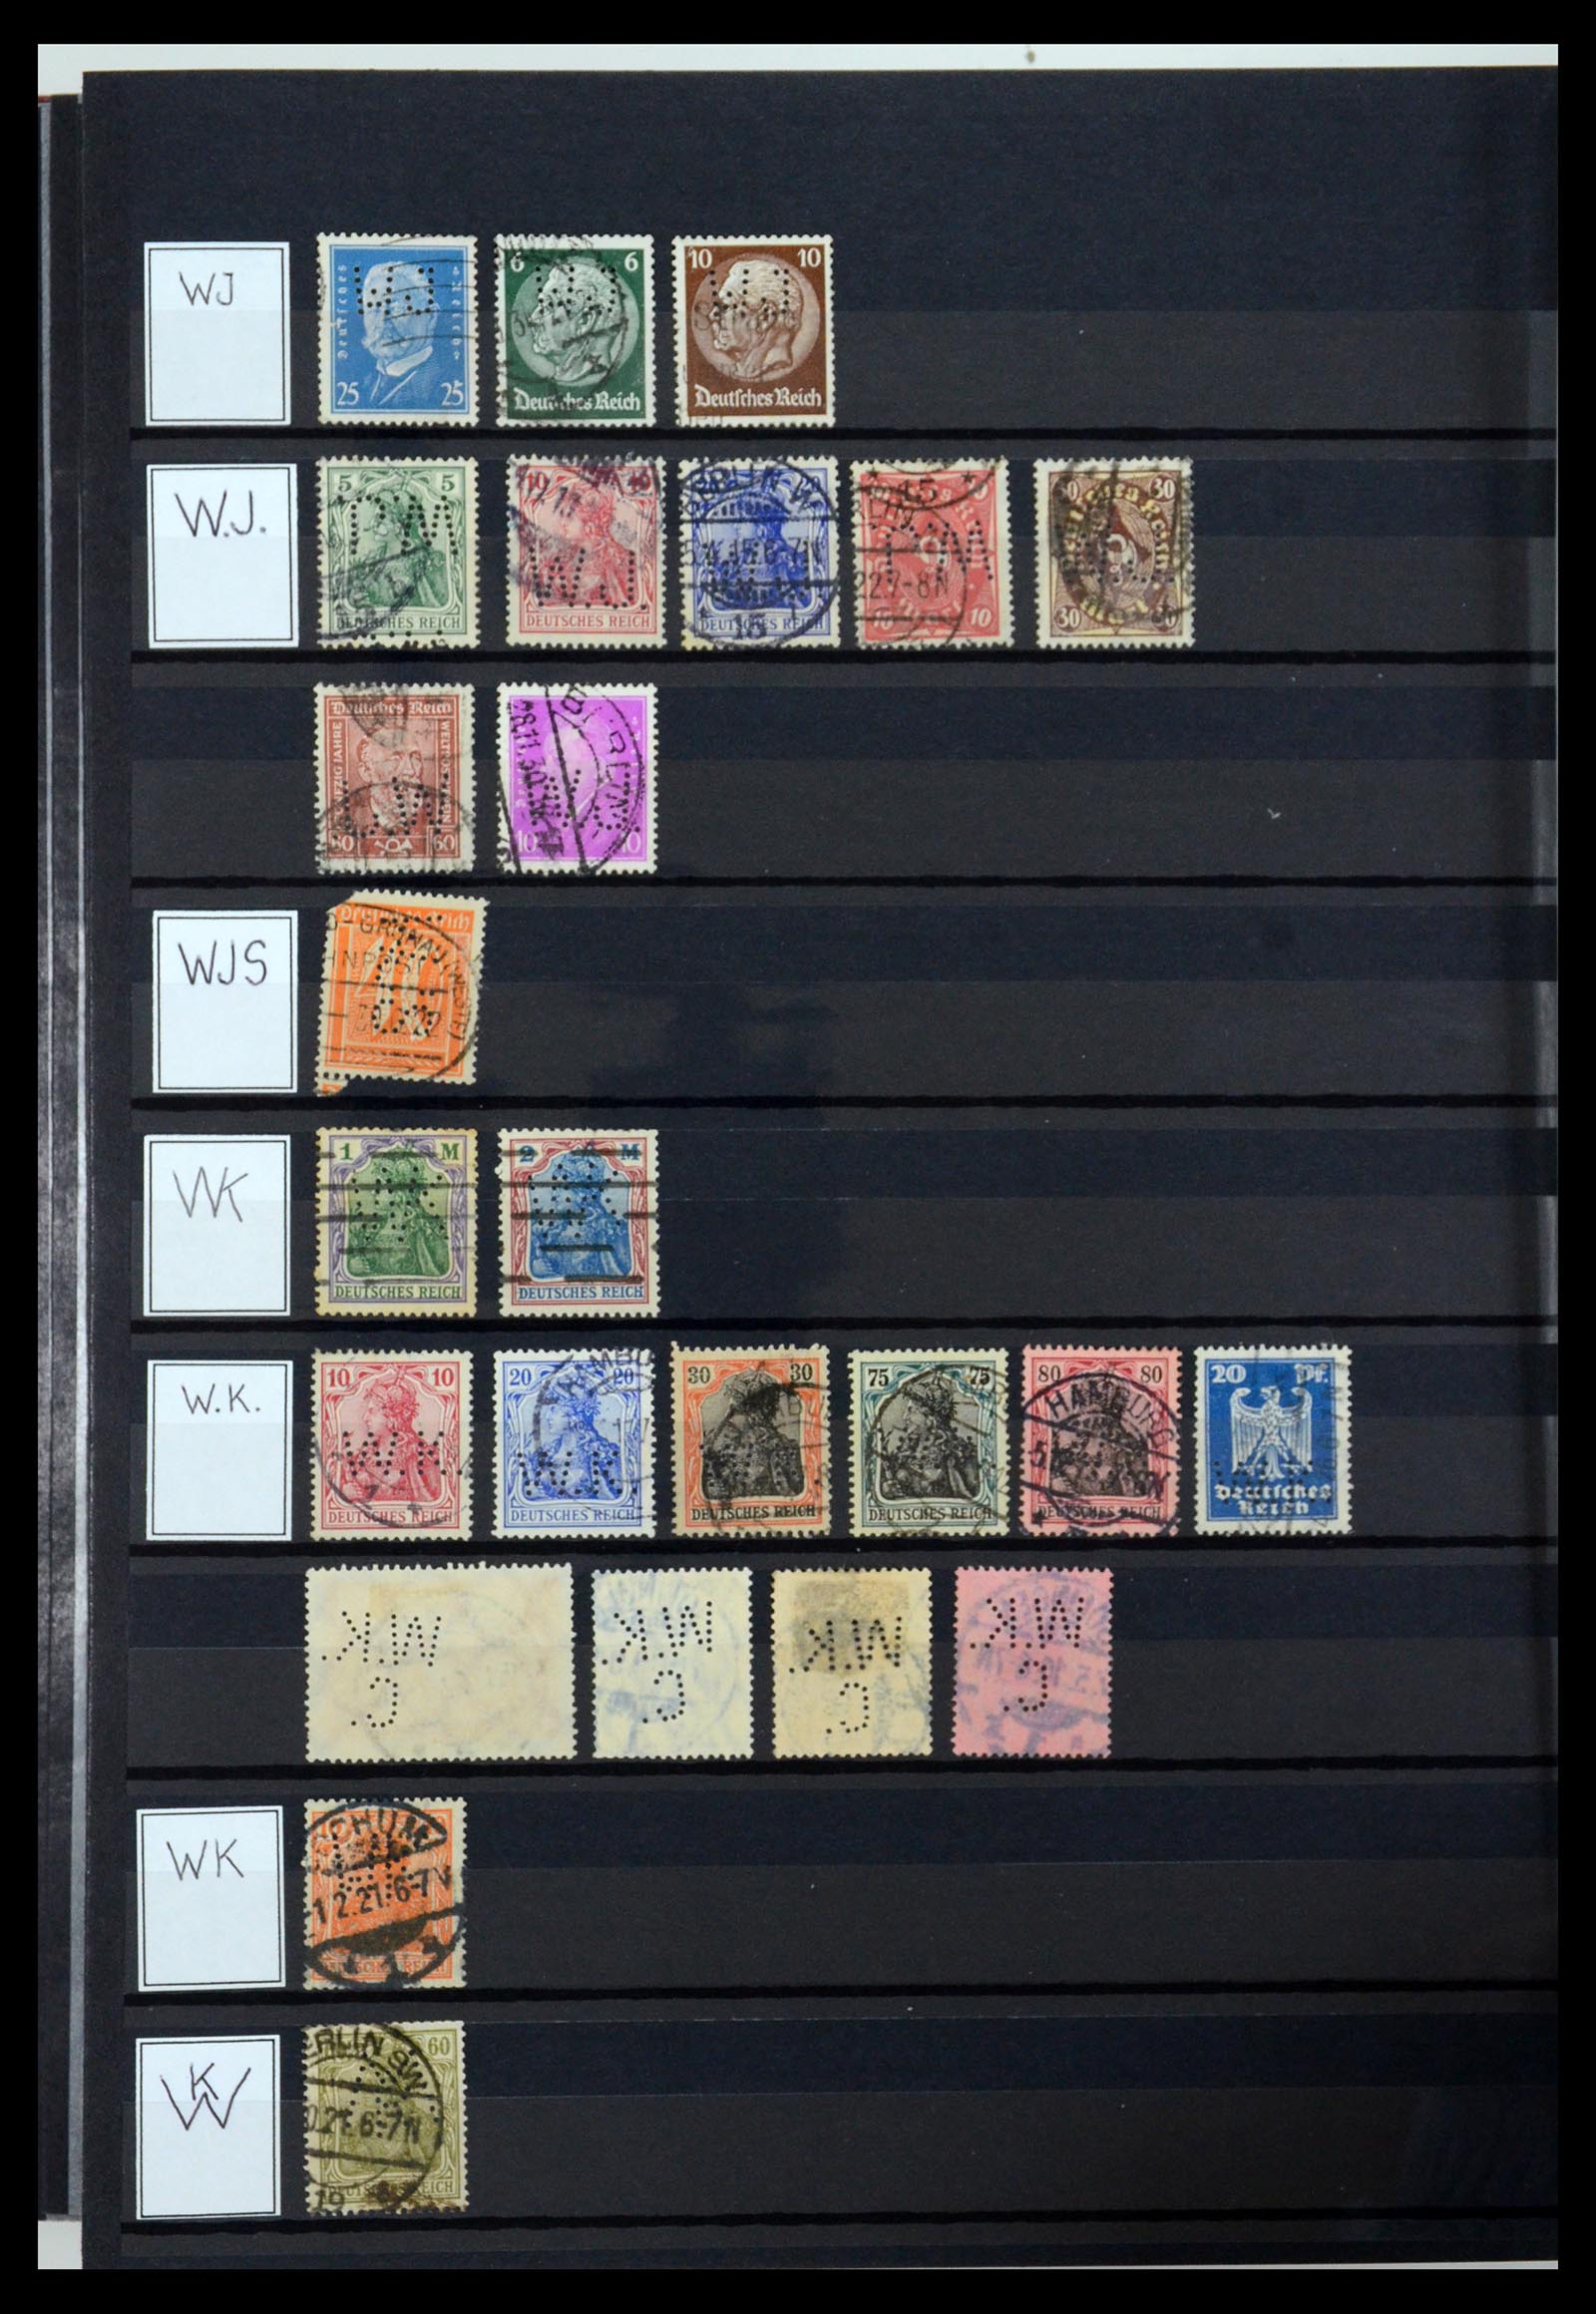 36405 339 - Stamp collection 36405 German Reich perfins 1880-1945.